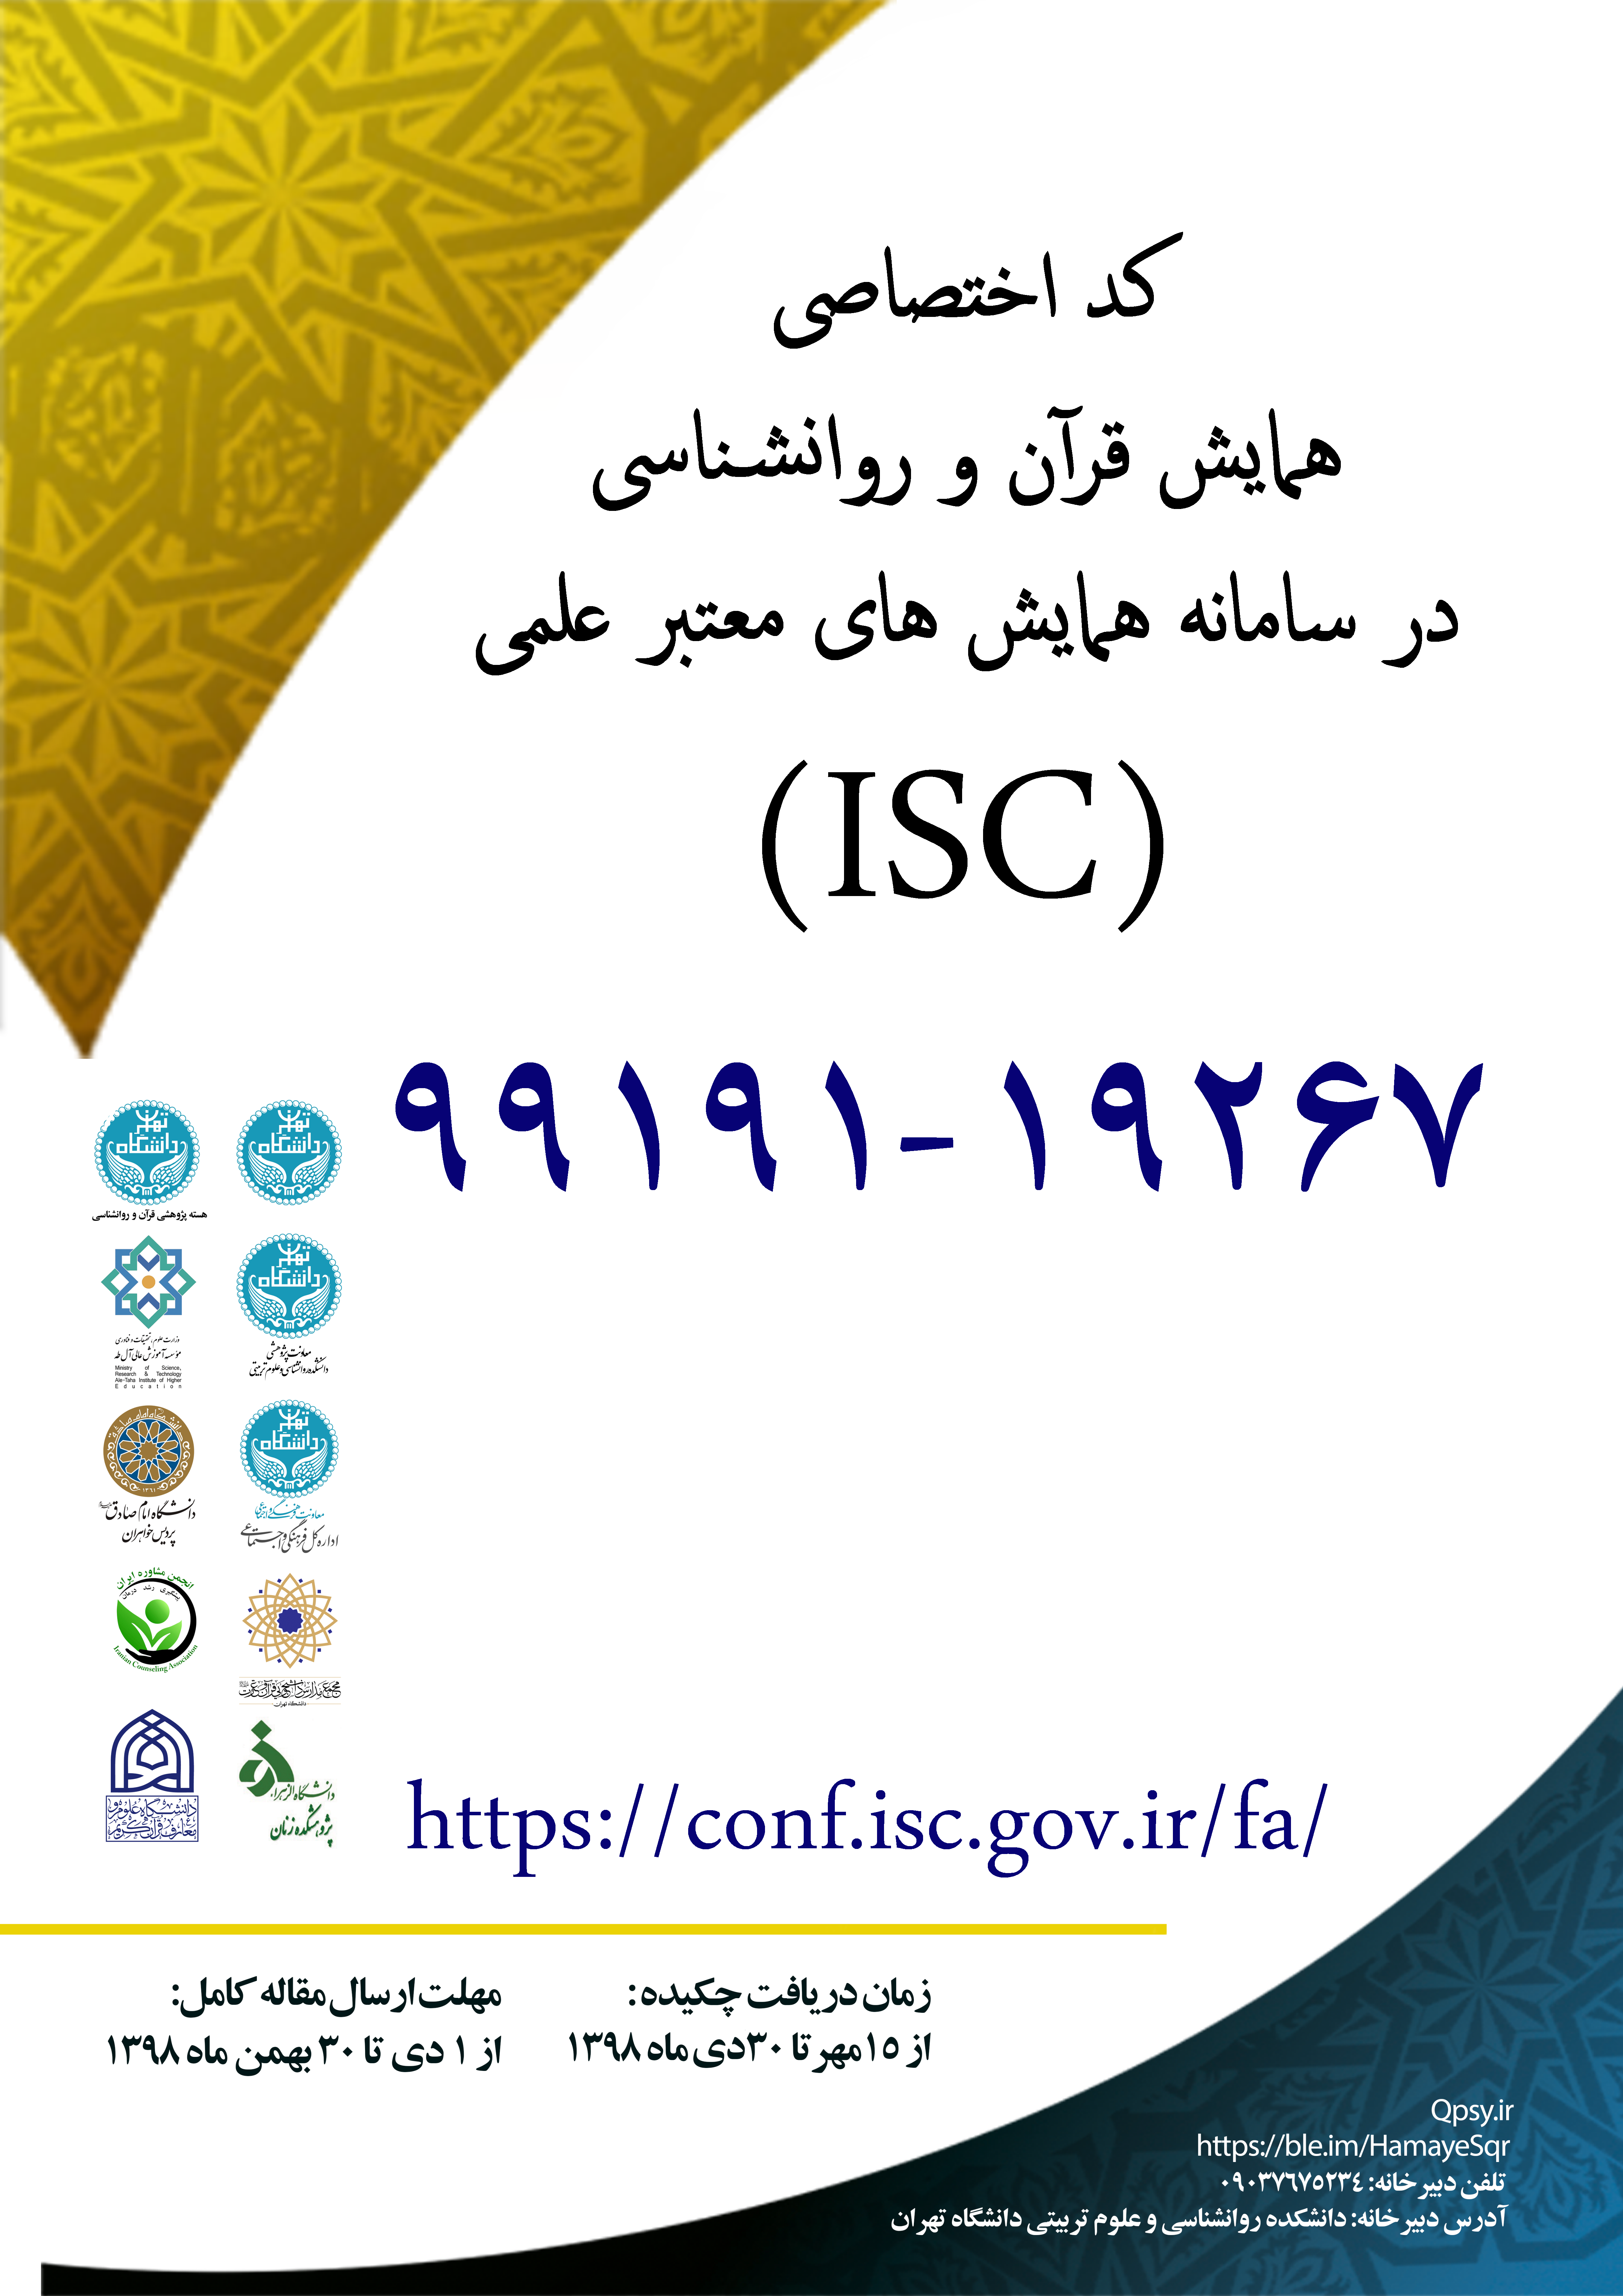 کد اختصاصی ISC برای همایش قرآن و روانشناسی